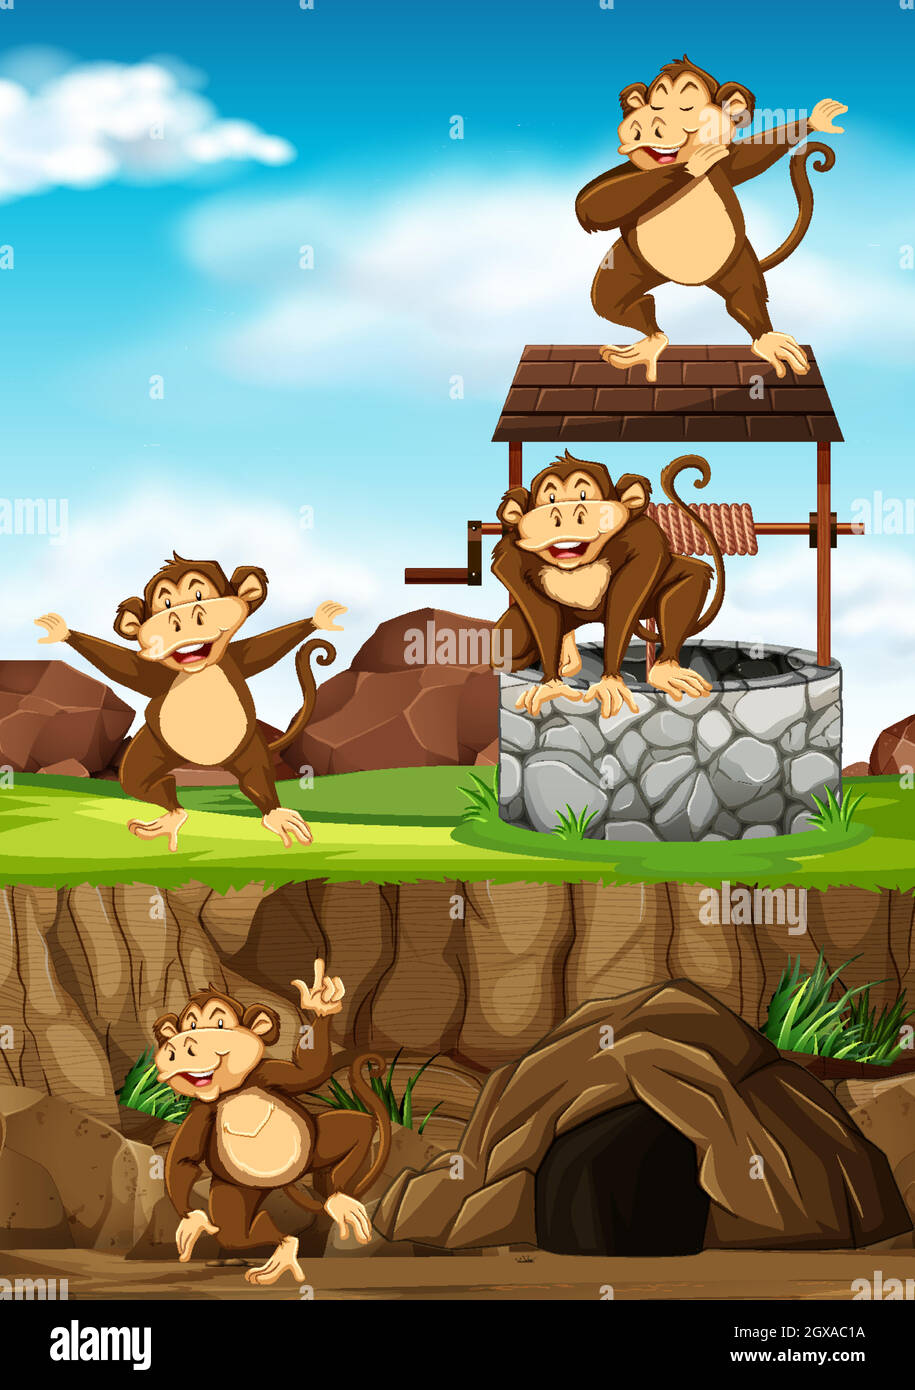 Los monos salvajes se agrupan en muchas poses en el estilo de dibujos animados del parque de animales en el fondo del día Ilustración del Vector